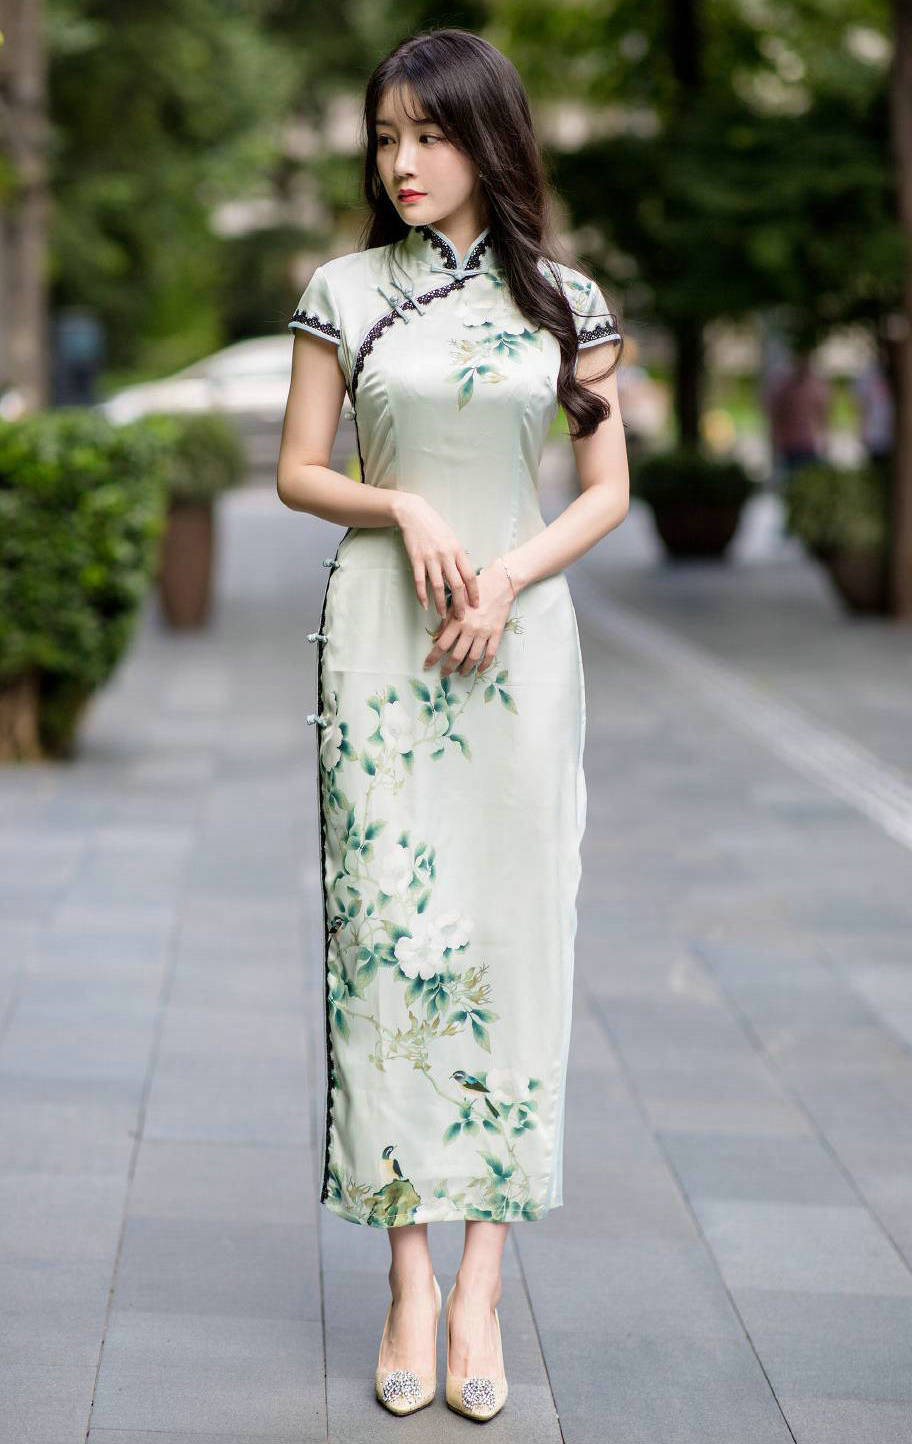 原创v领的米白色连衣裙,收腰款式更显优雅的姿态